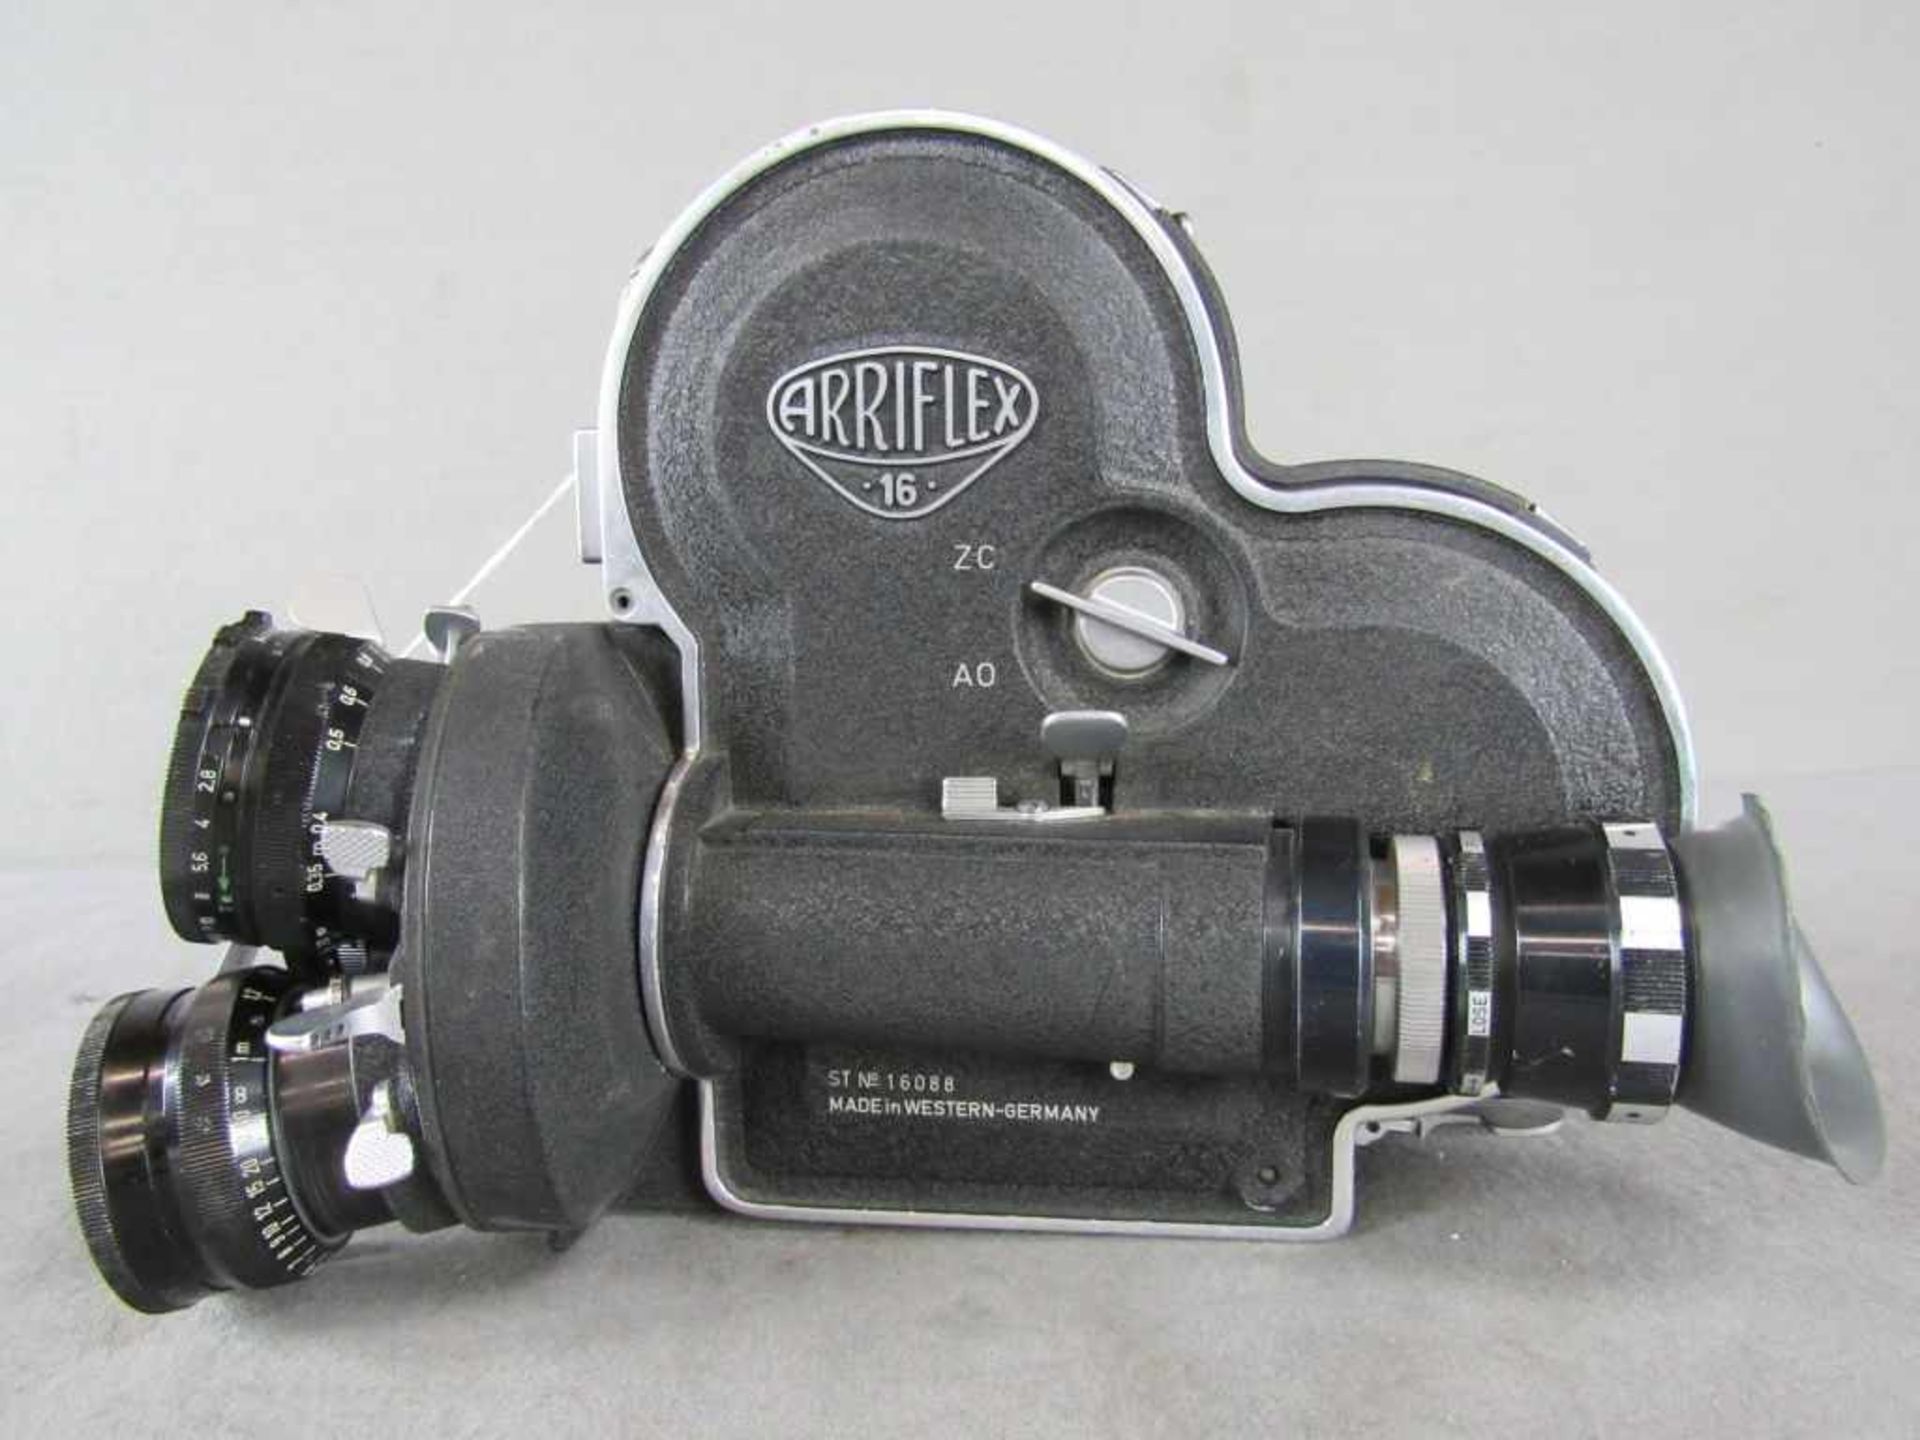 Hochwertige 16cm Filmkamera Arriflex Model 16 3 Linsig Made in Westgermany Hersteller Arnold und